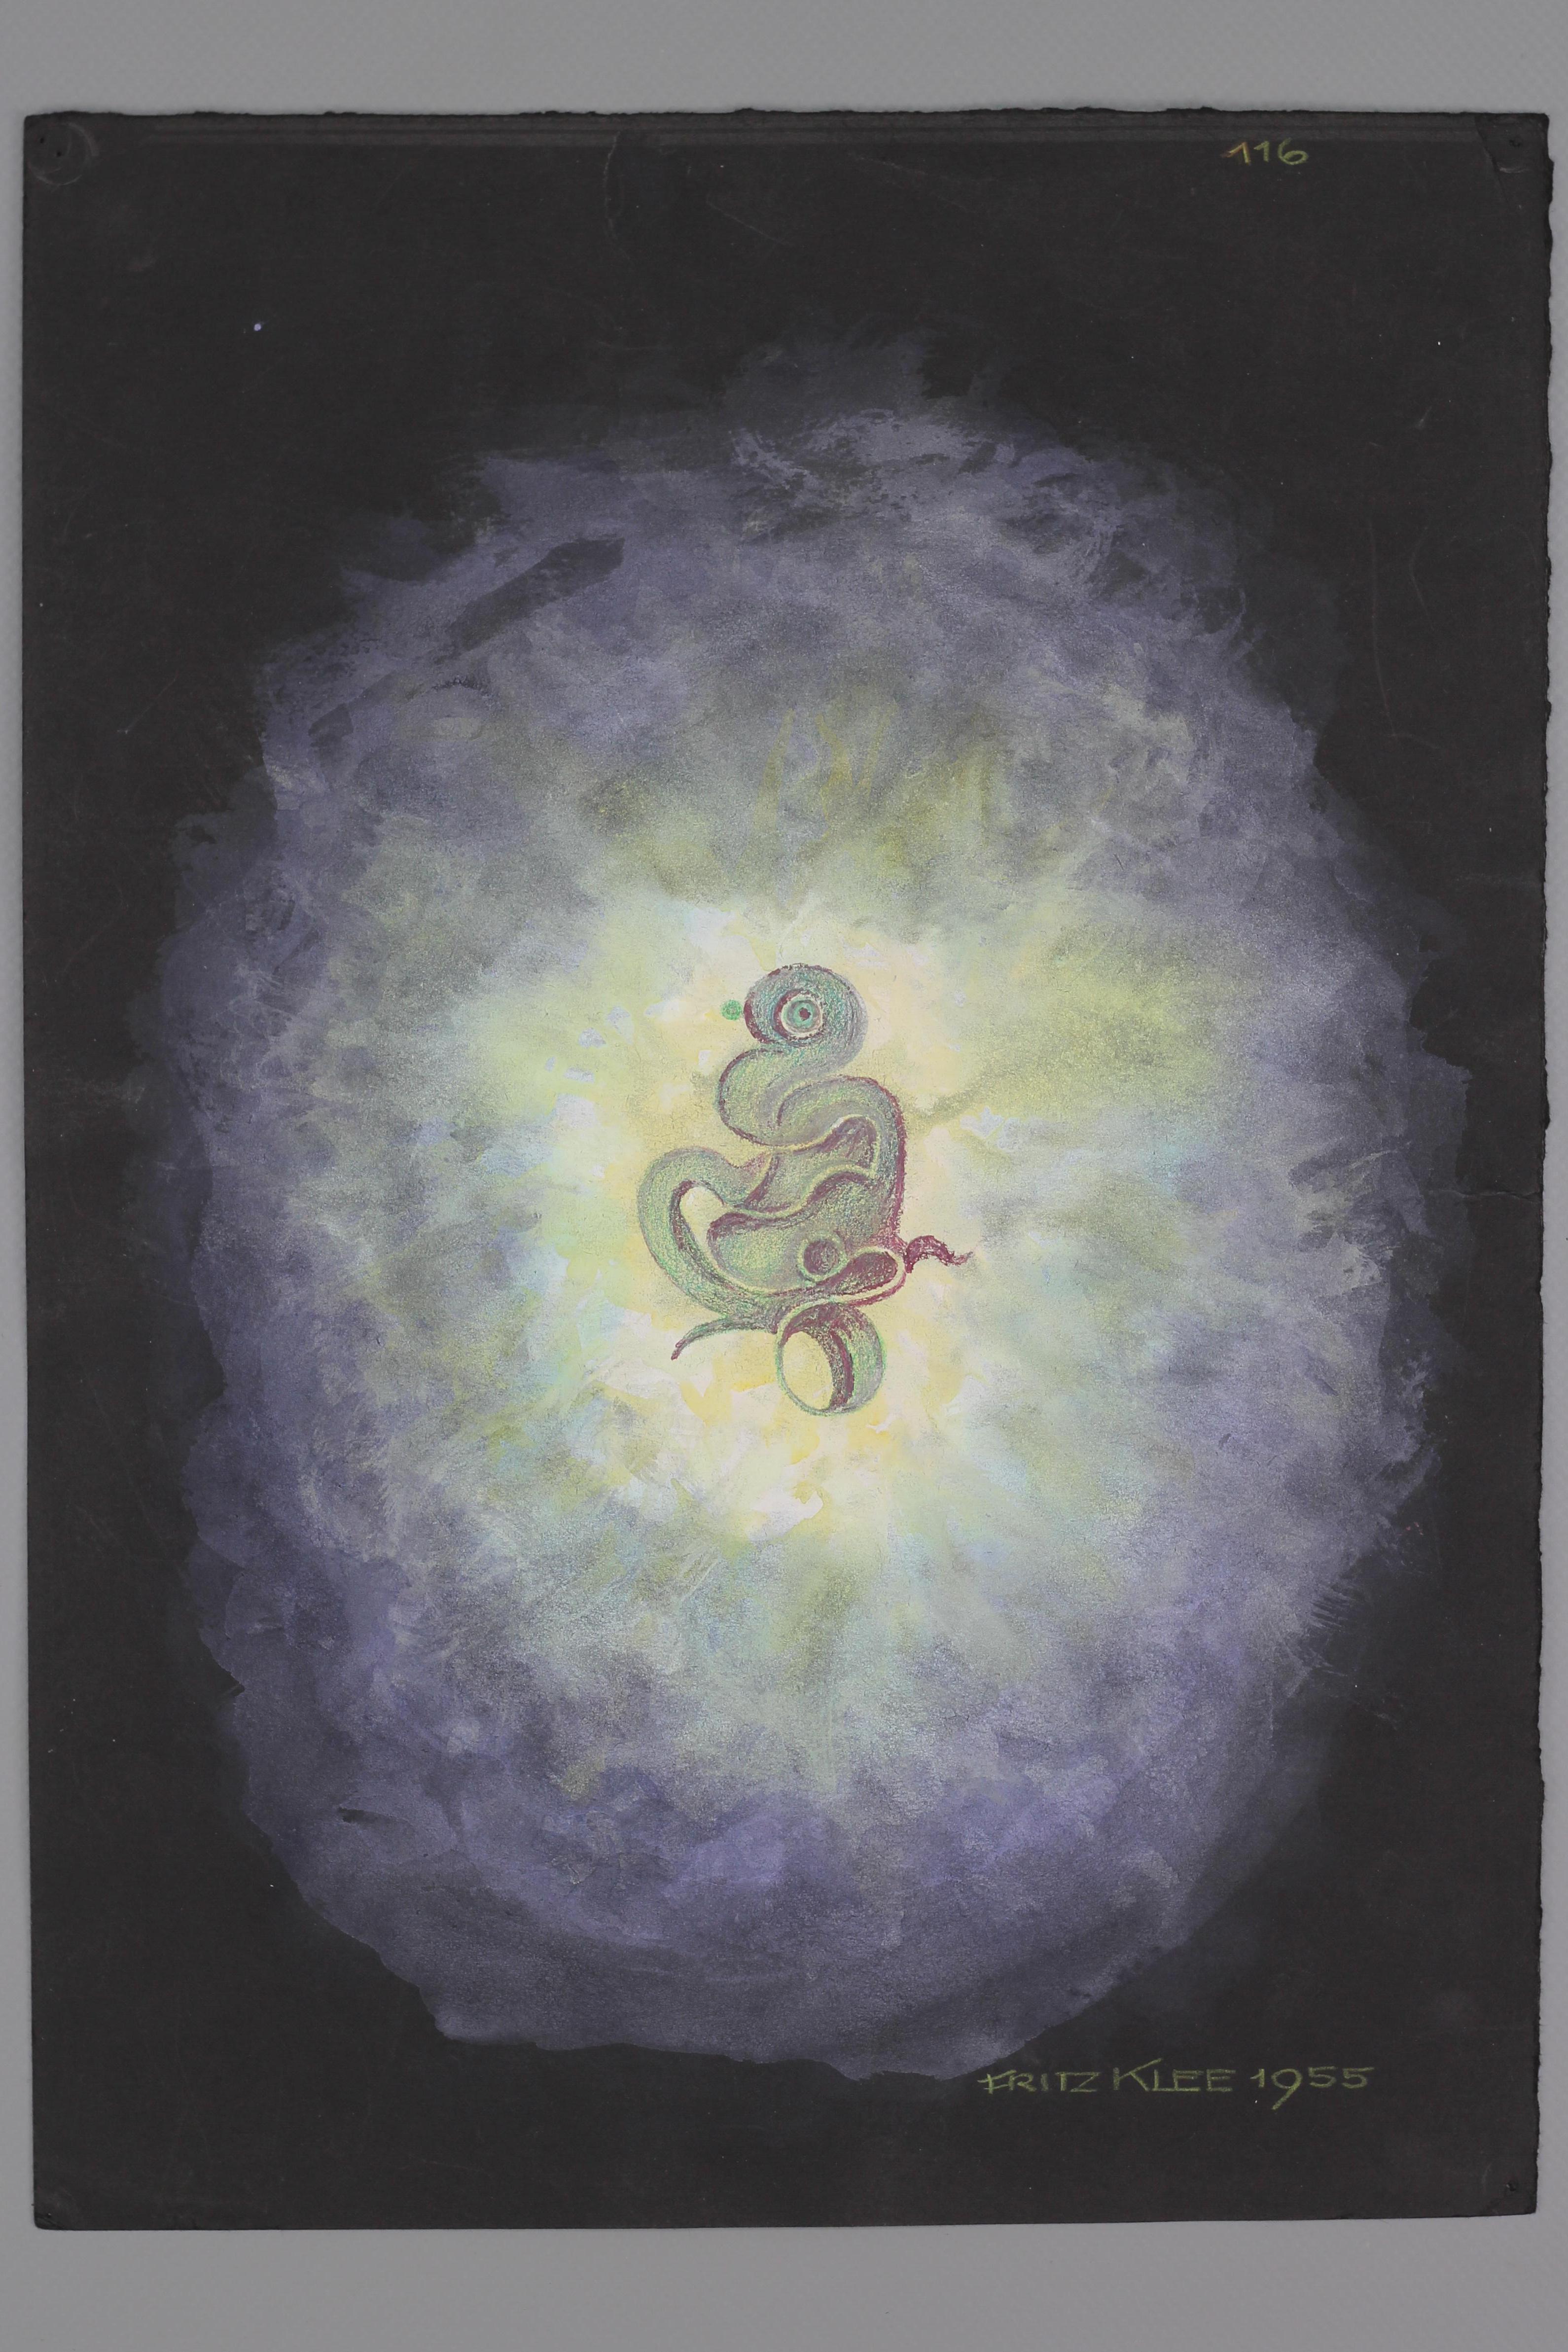 Un magnifique dessin abstrait organique à la main, une ébauche de composition ornementale aux couleurs fortes et vives sur papier noir par Fritz Klee. Crayons de couleur sur papier, signé et daté 'Fritz Klee 1955', numéroté en haut.
Taille de la